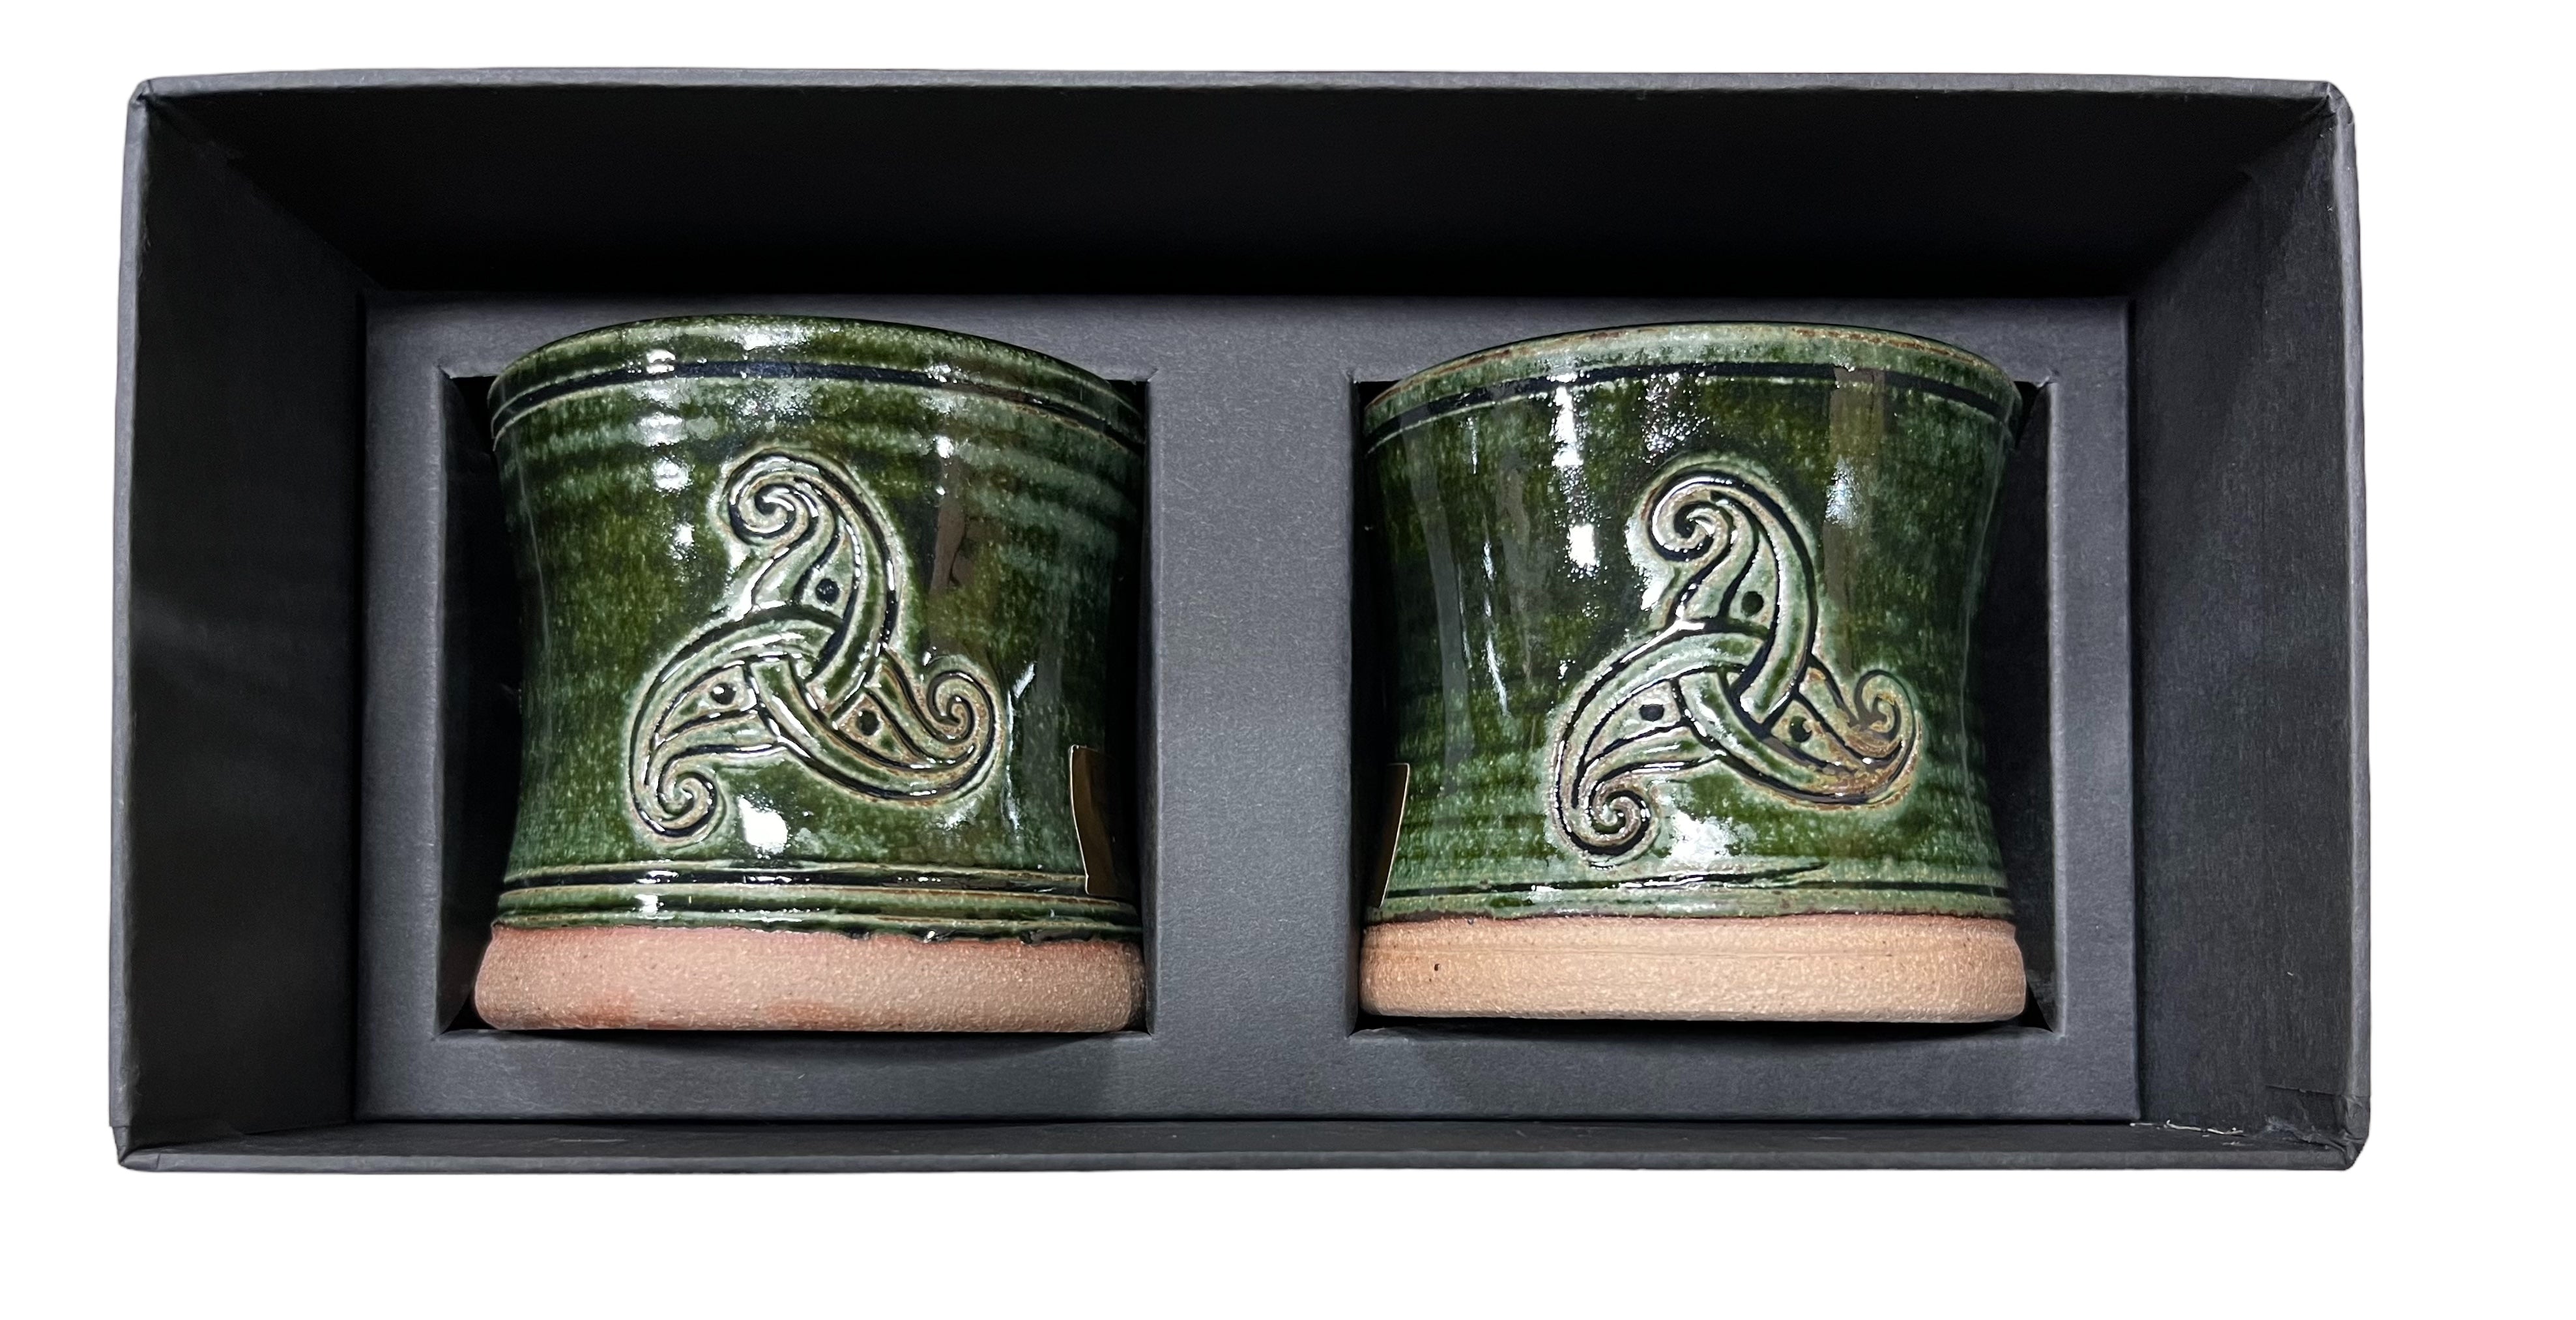 Hand Made Irish Pottery Whiskey Tumbler Box Set - Triskele